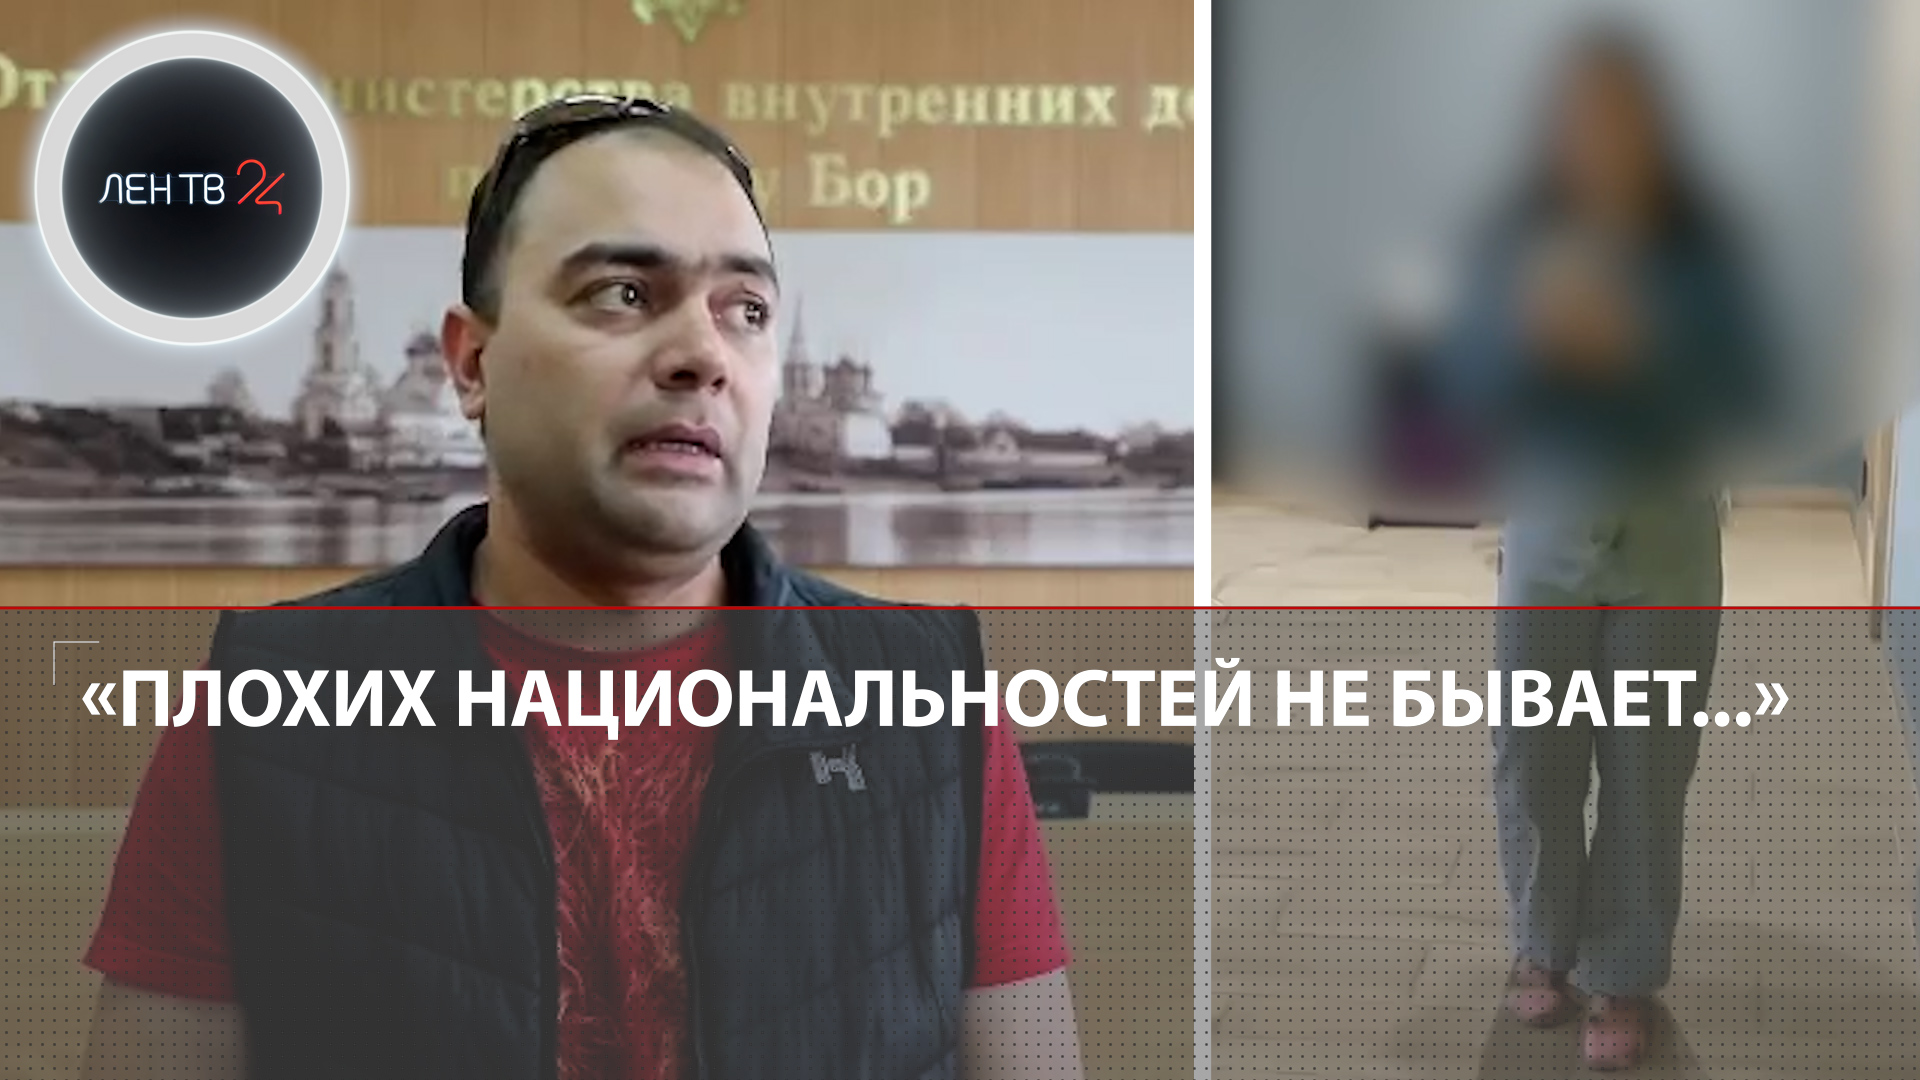 «В России нет плохой нации, есть только плохие люди»: полицейские помирили курьера и сотрудницу ПВЗ